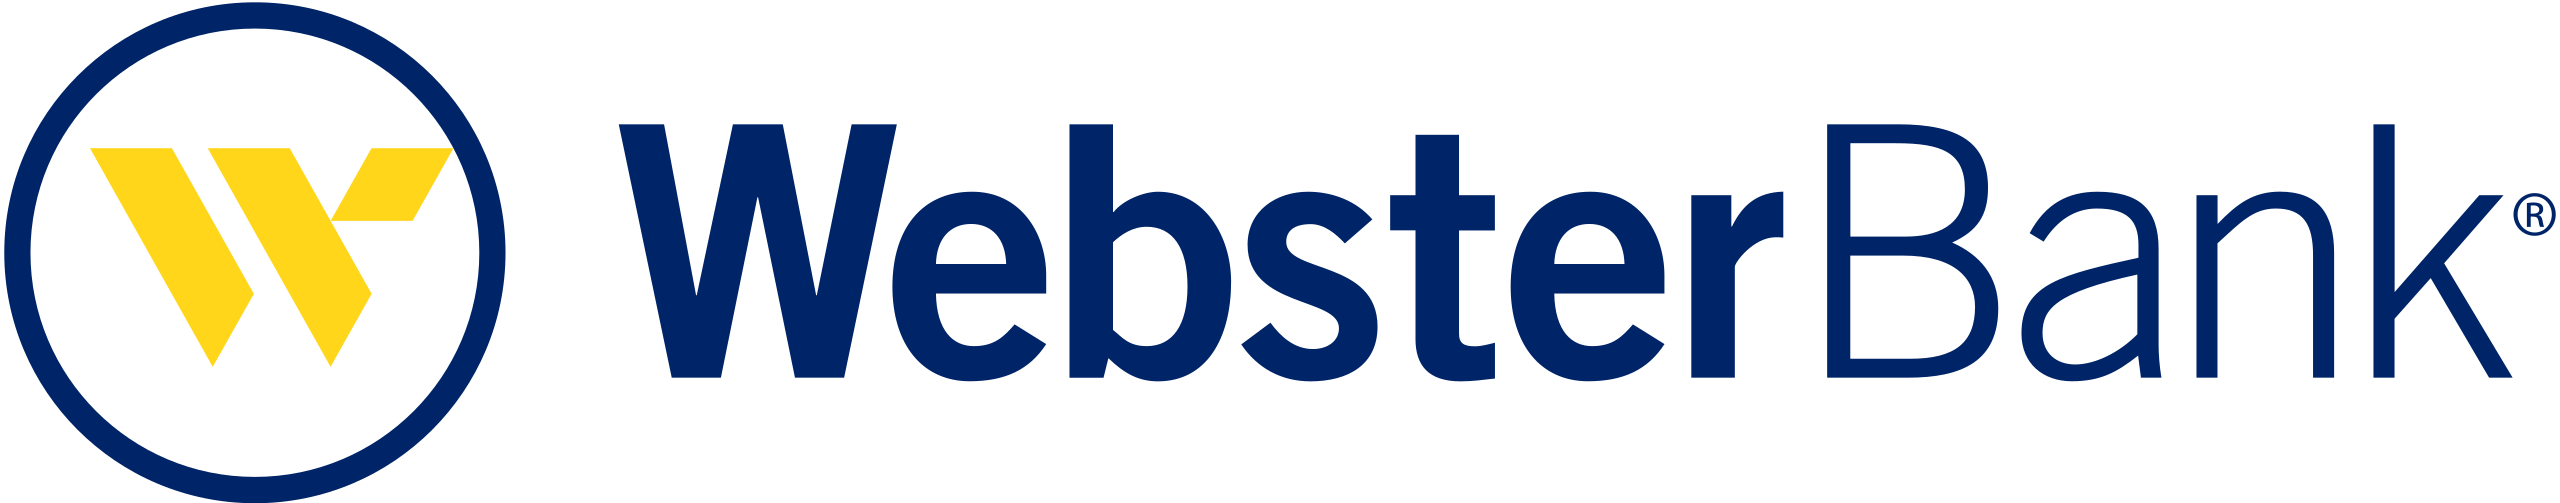 http://Webster_Bank_logo.svg